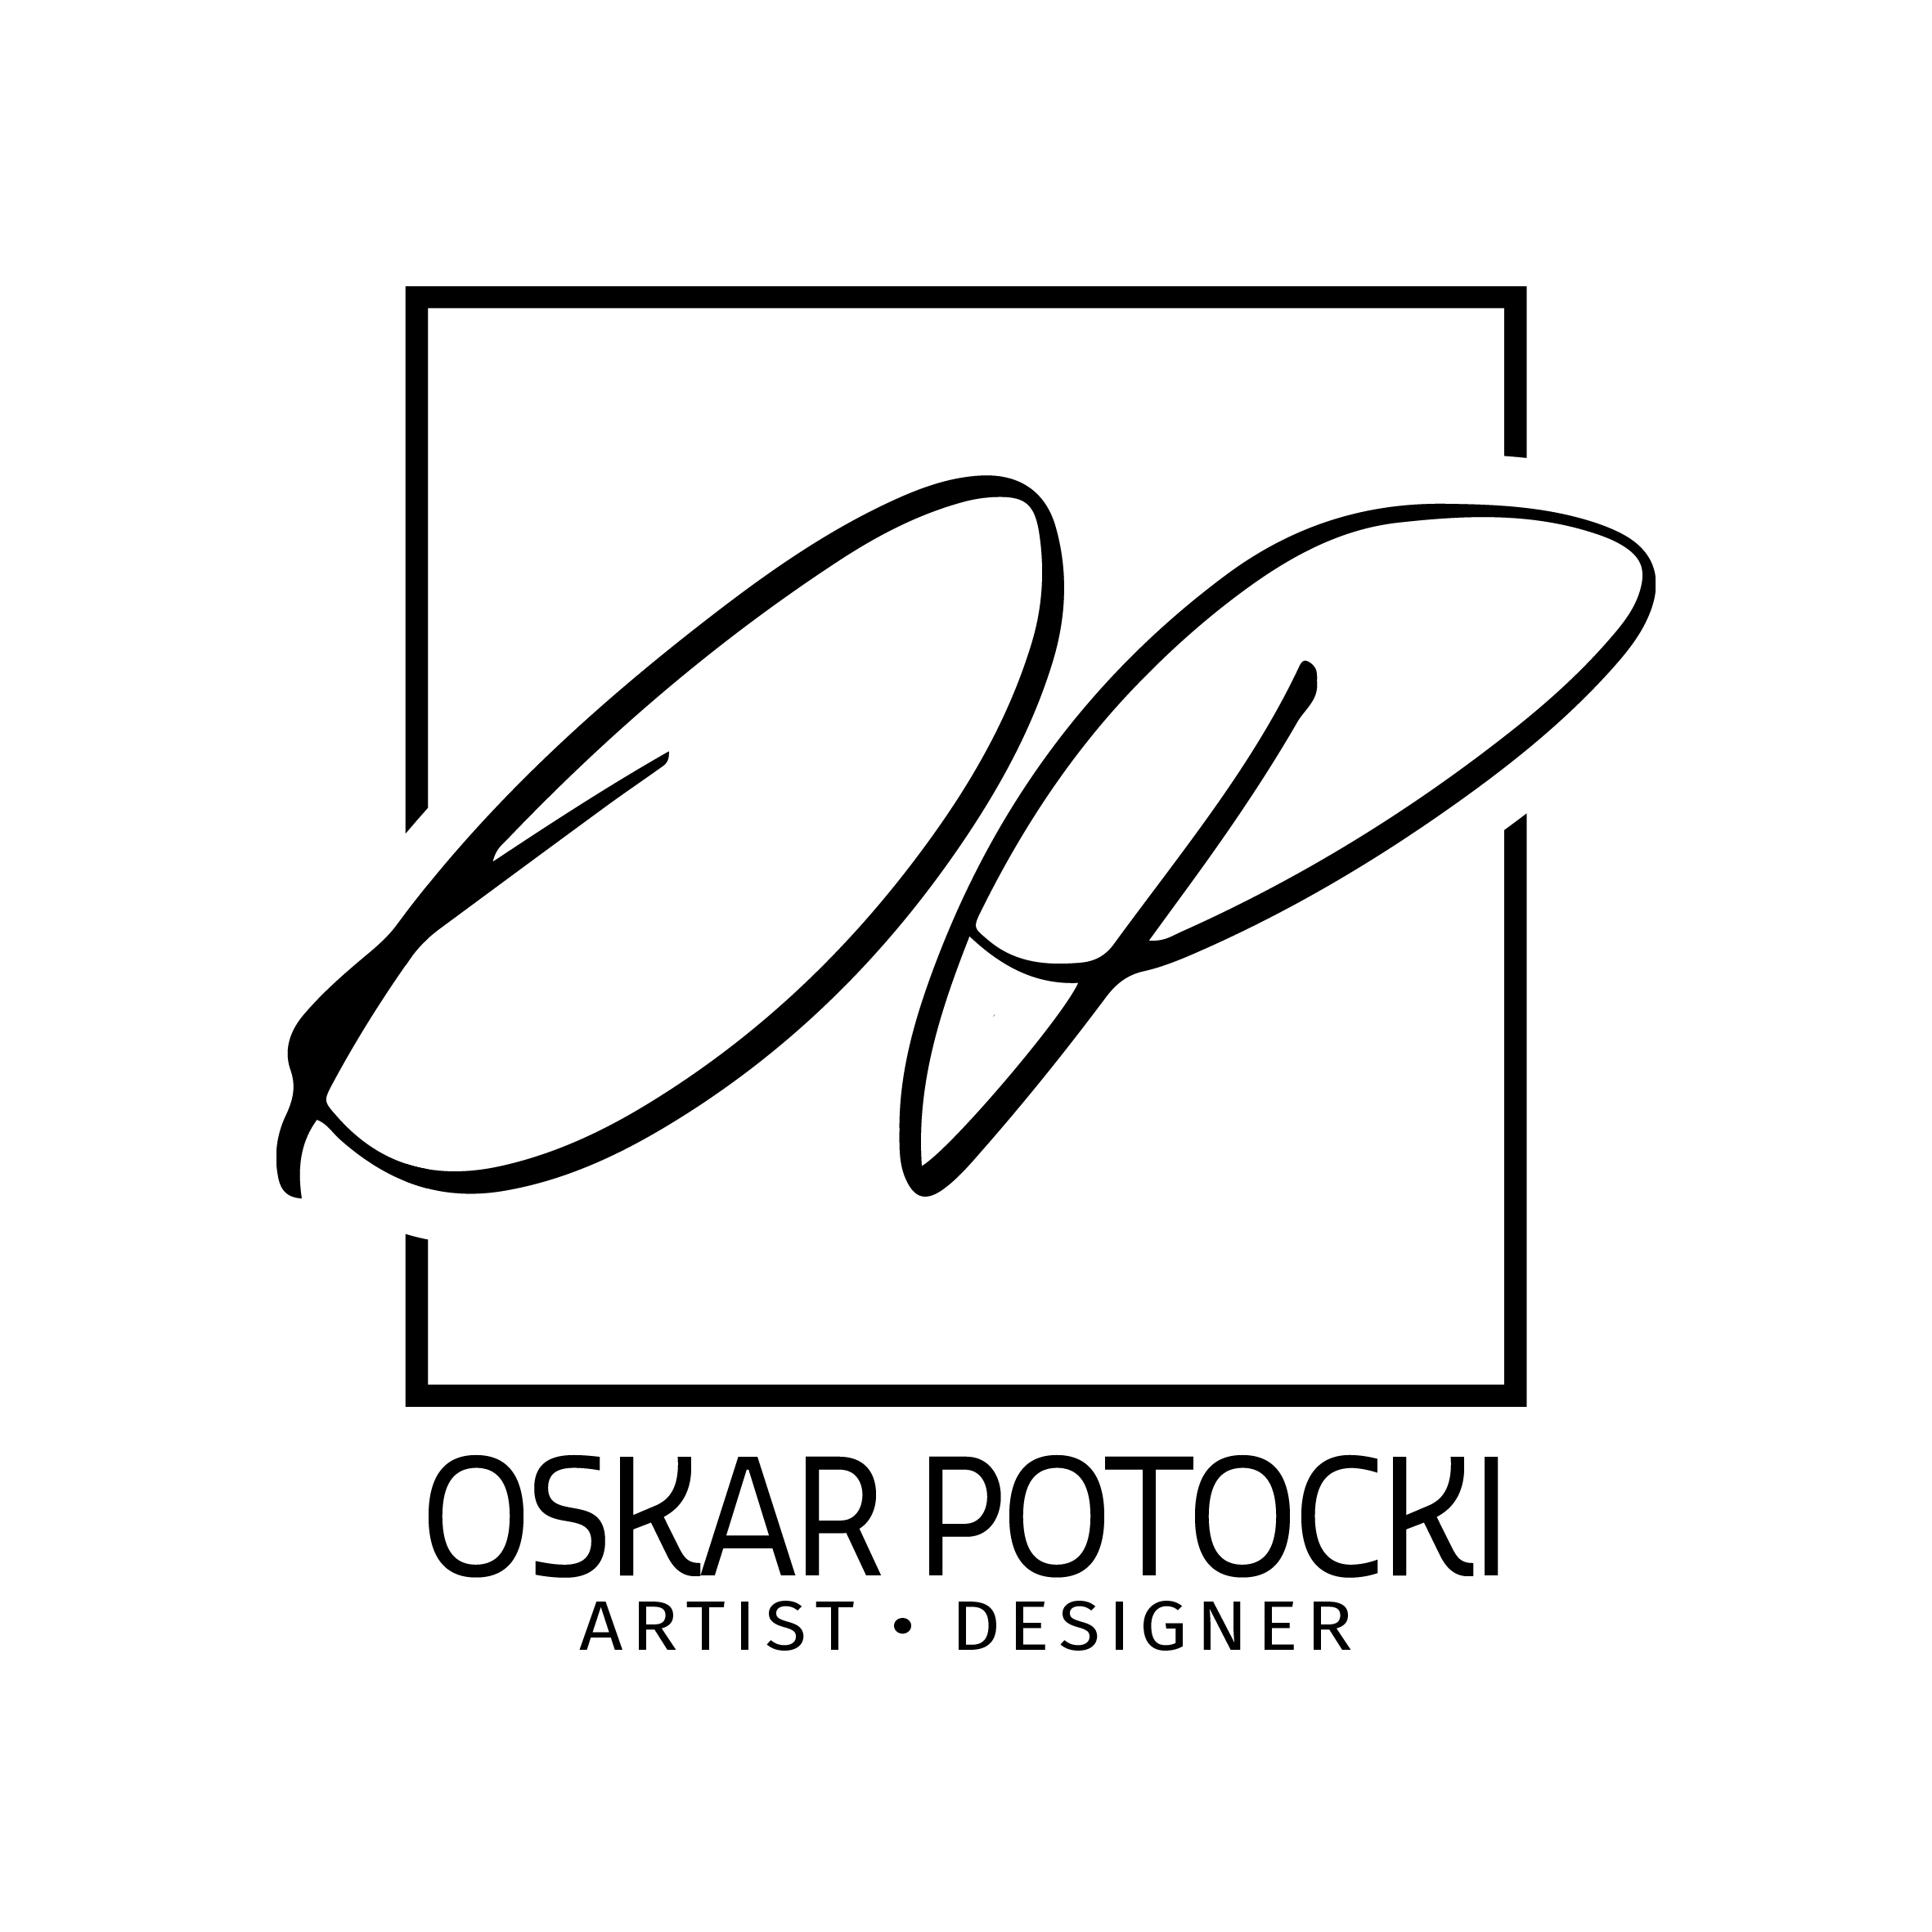 Oskar Potocki